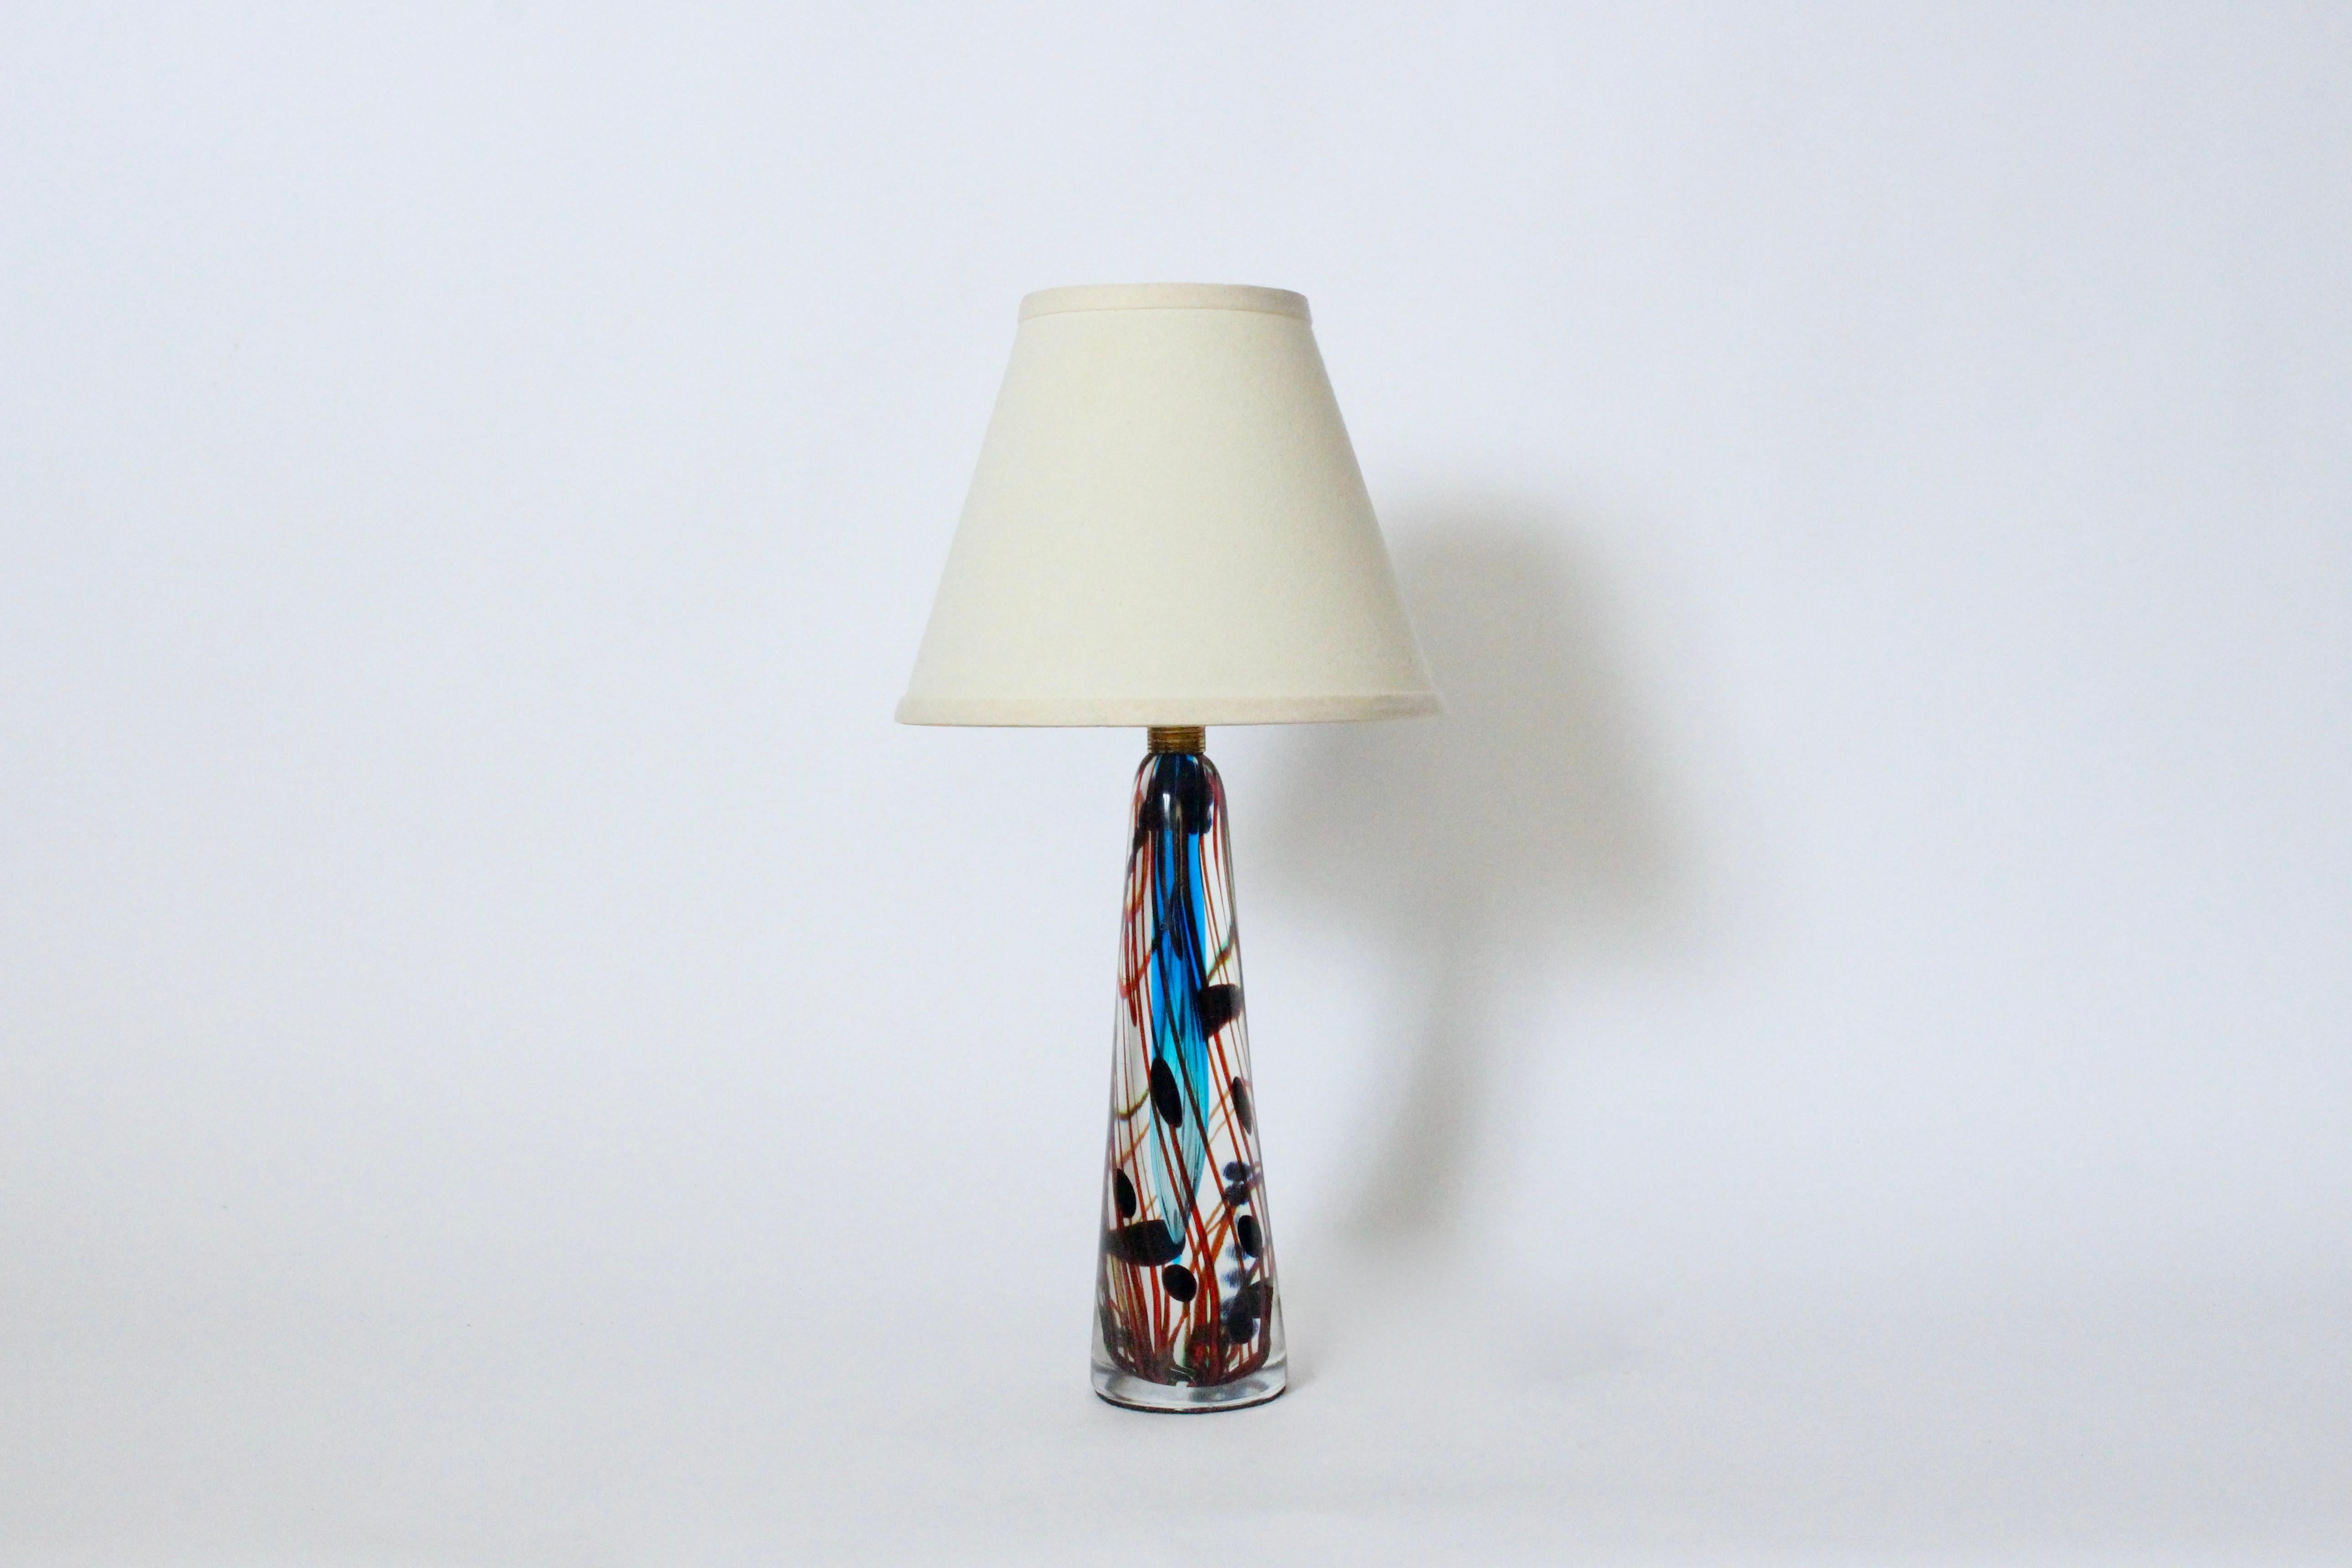 Moderne italienische Tischlampe aus mundgeblasenem Glas im Stil von Fulvio Bianconi, 1960er Jahre. Er hat eine längliche, transparente Kegelform und eine wasserähnliche Bewegung. Handgefertigt mit blauer und aquatischer Färbung, einschließlich